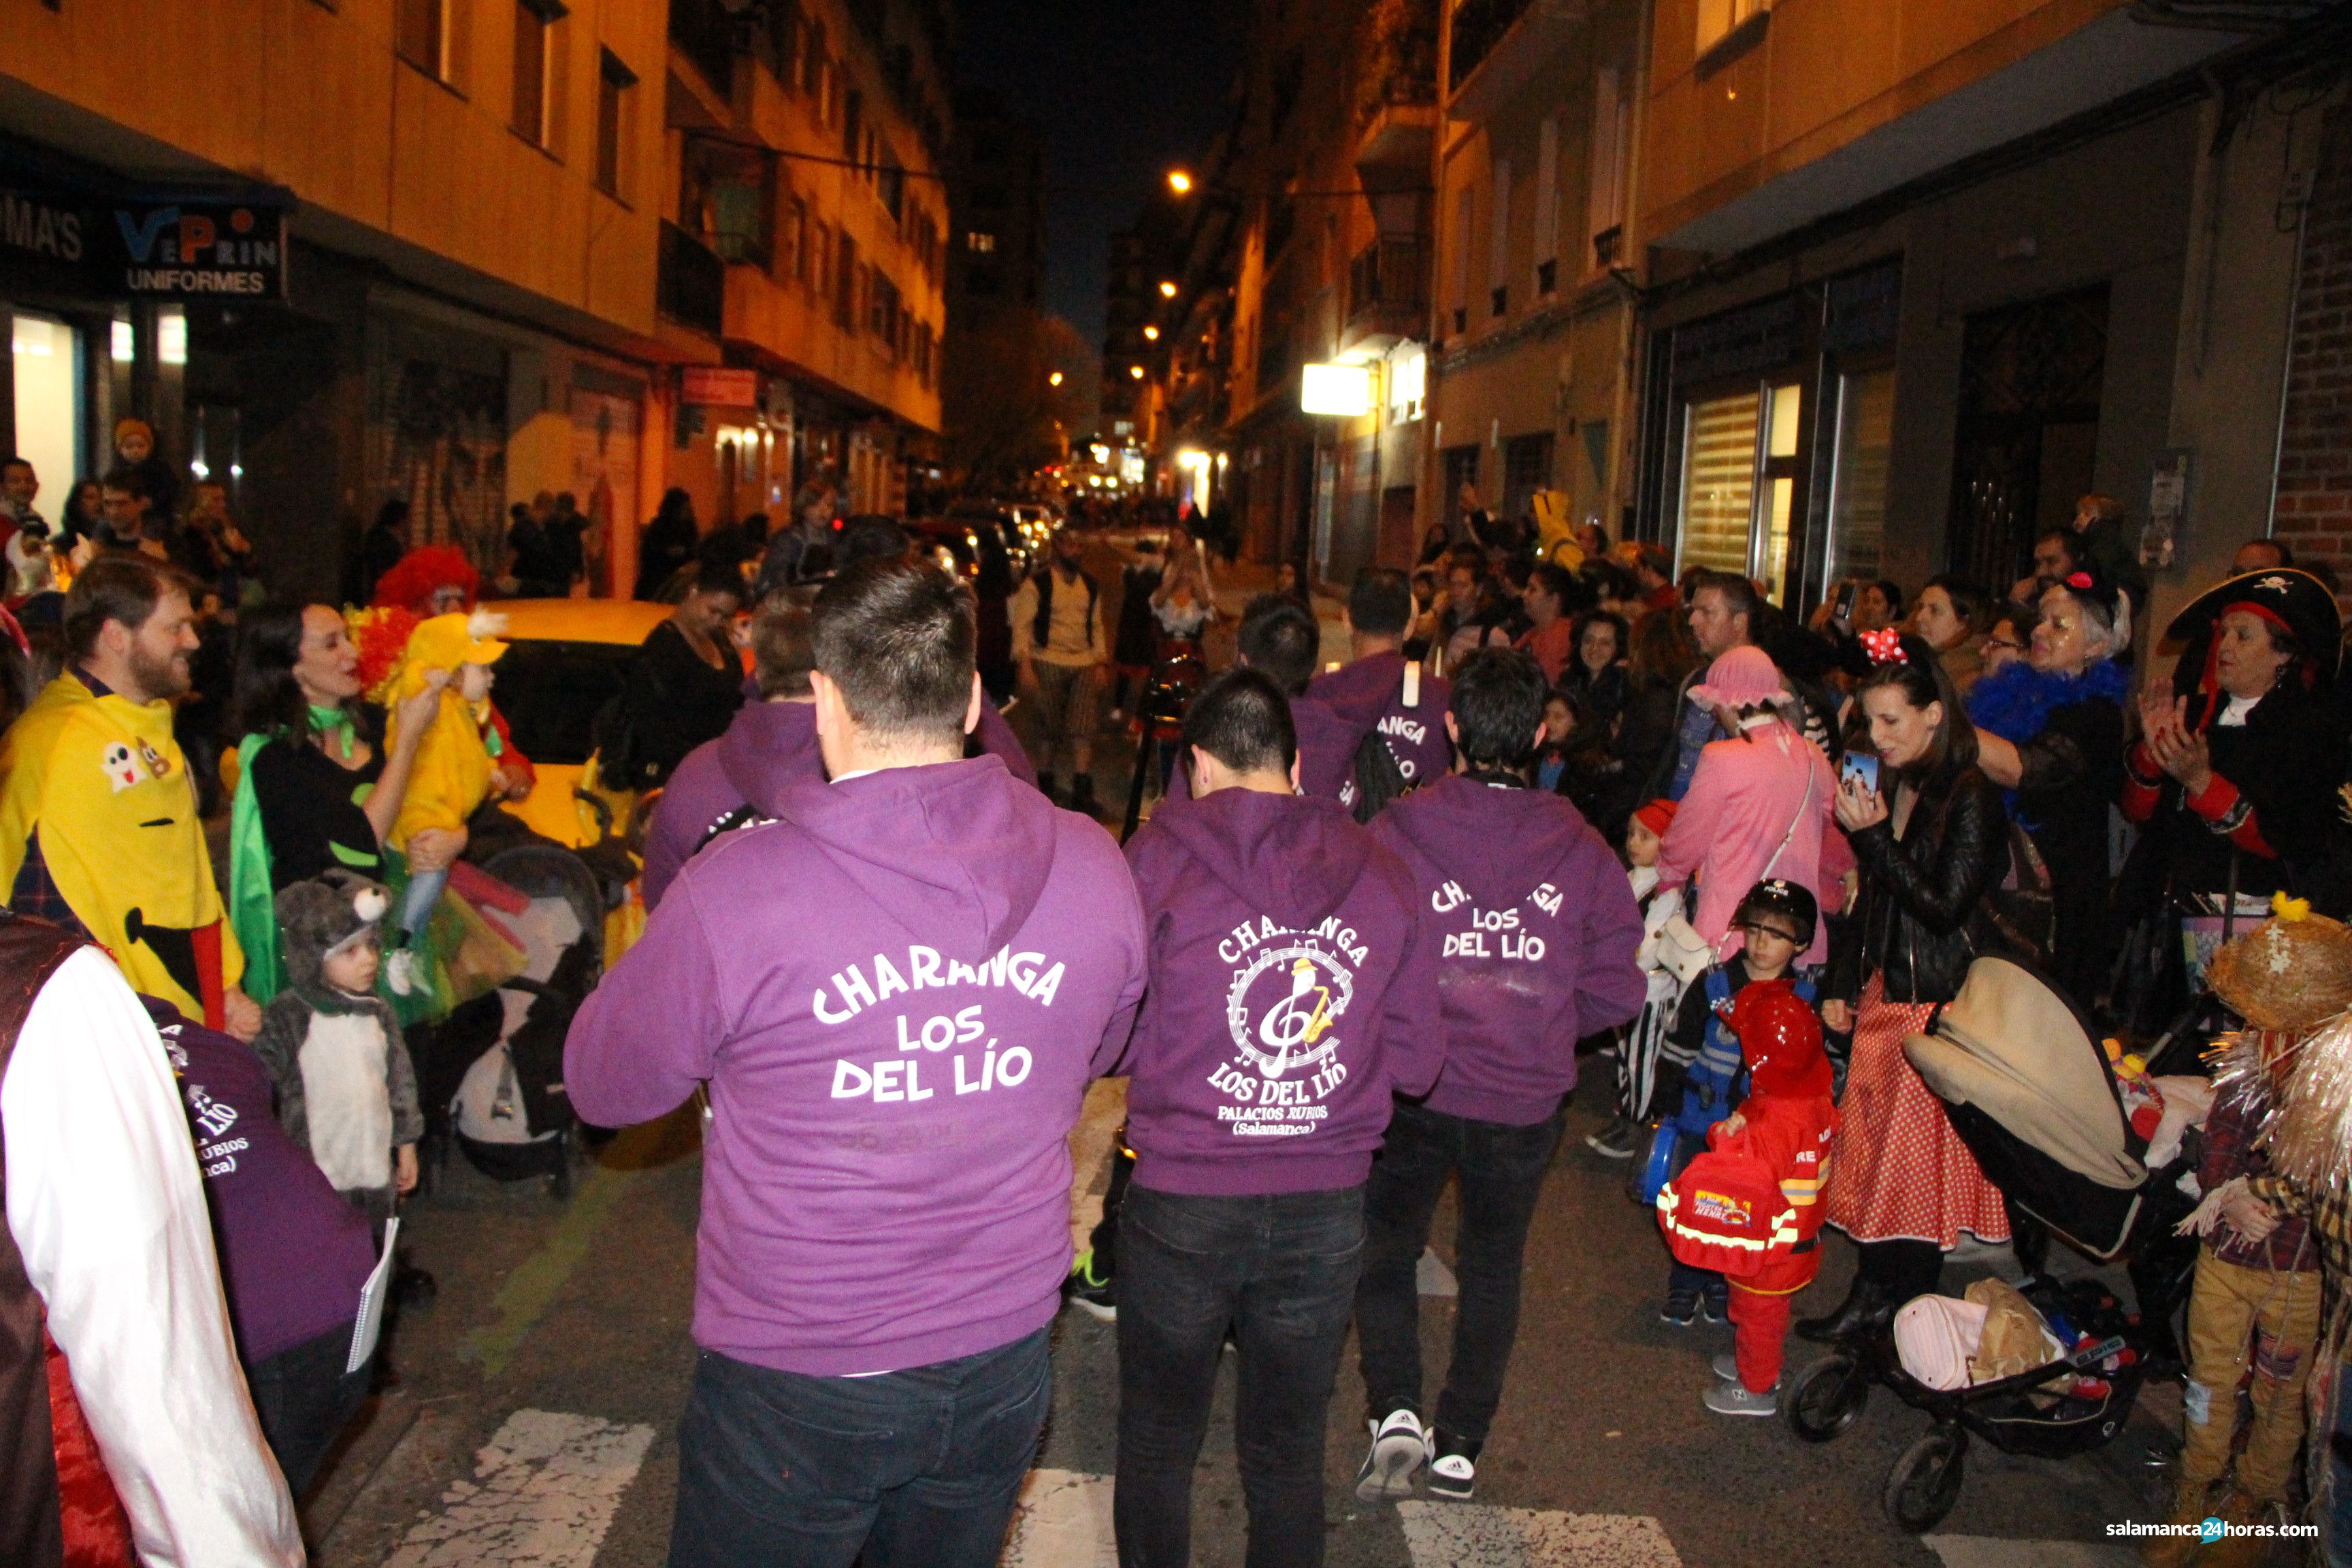  Carnaval barrio del oeste (24 02 2020) (53) 